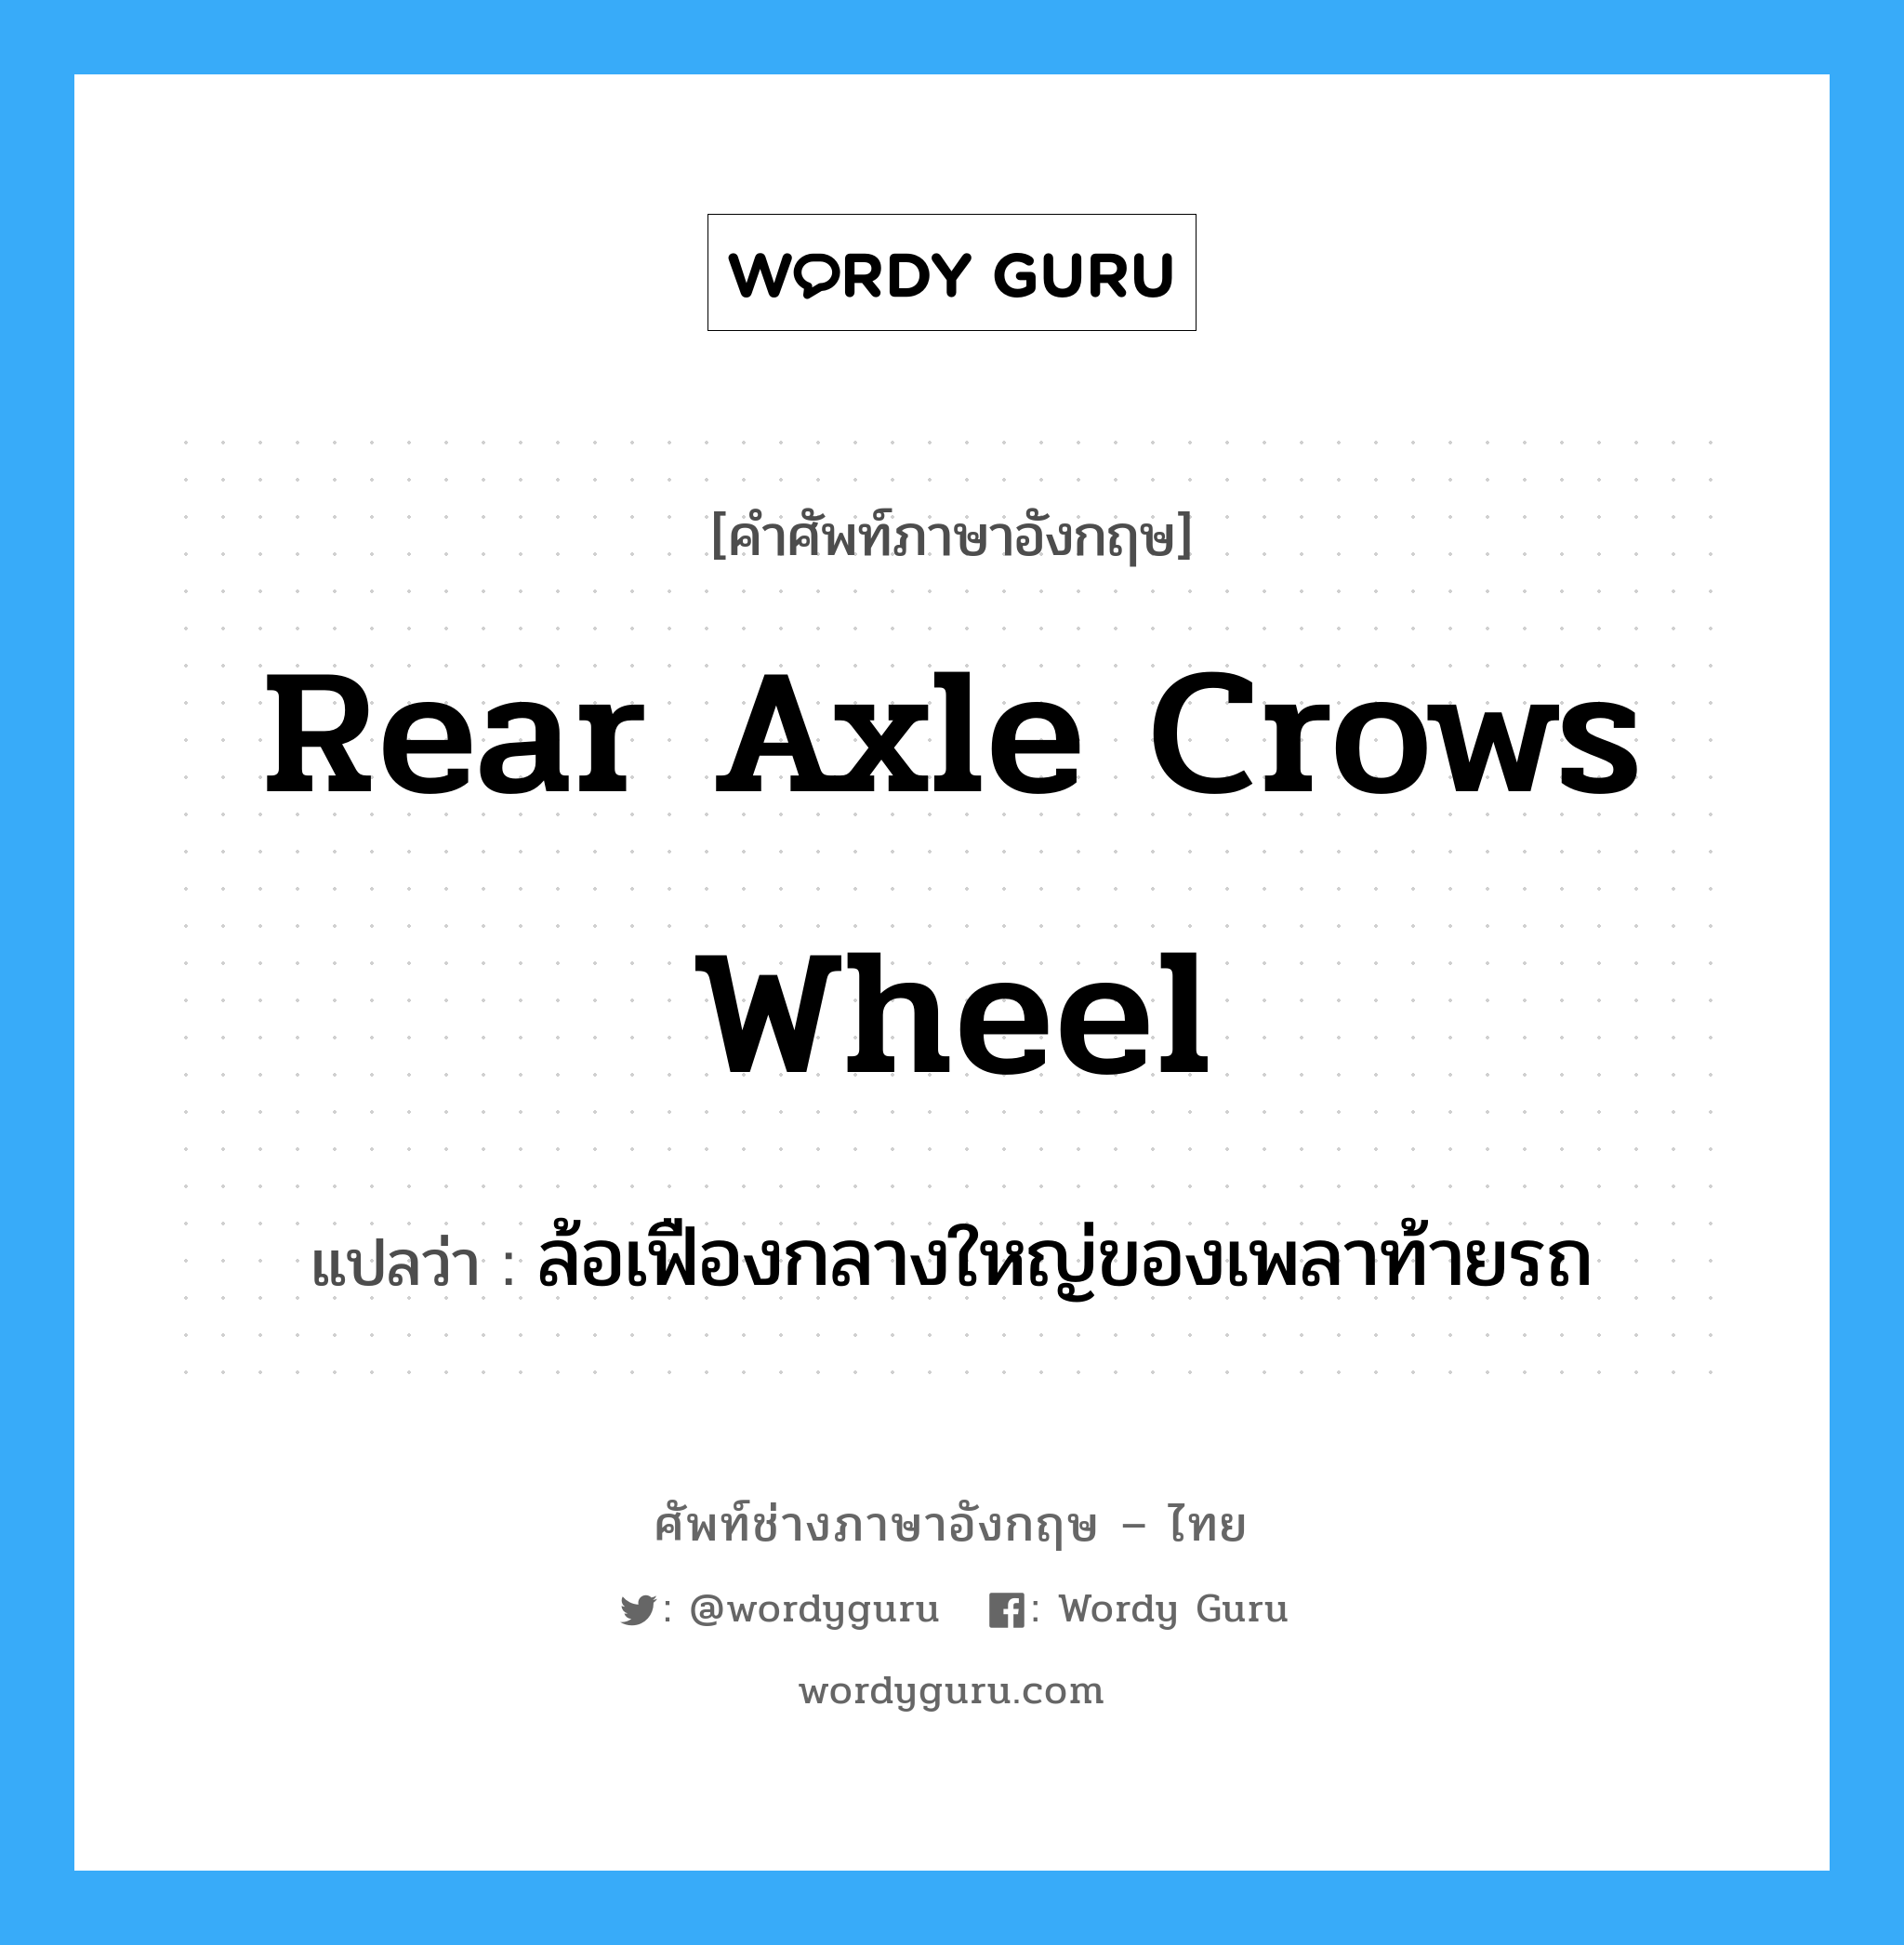 rear axle crows wheel แปลว่า?, คำศัพท์ช่างภาษาอังกฤษ - ไทย rear axle crows wheel คำศัพท์ภาษาอังกฤษ rear axle crows wheel แปลว่า ล้อเฟืองกลางใหญ่ของเพลาท้ายรถ